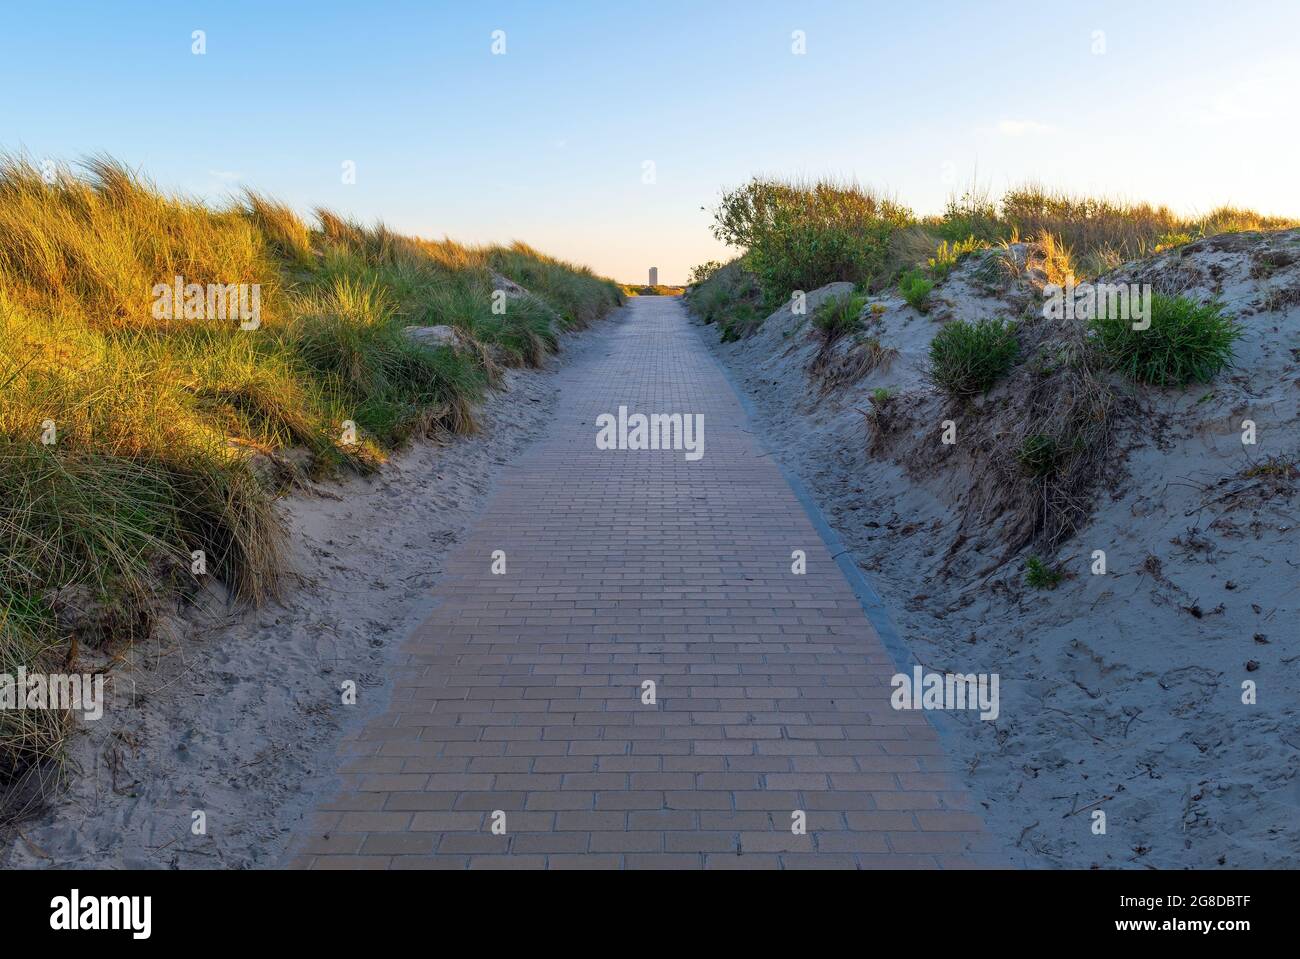 Sentier de randonnée de Sand Dunes le long de la côte de la mer du Nord avec gratte-ciel au loin, Oostende (Ostende), Belgique. Banque D'Images